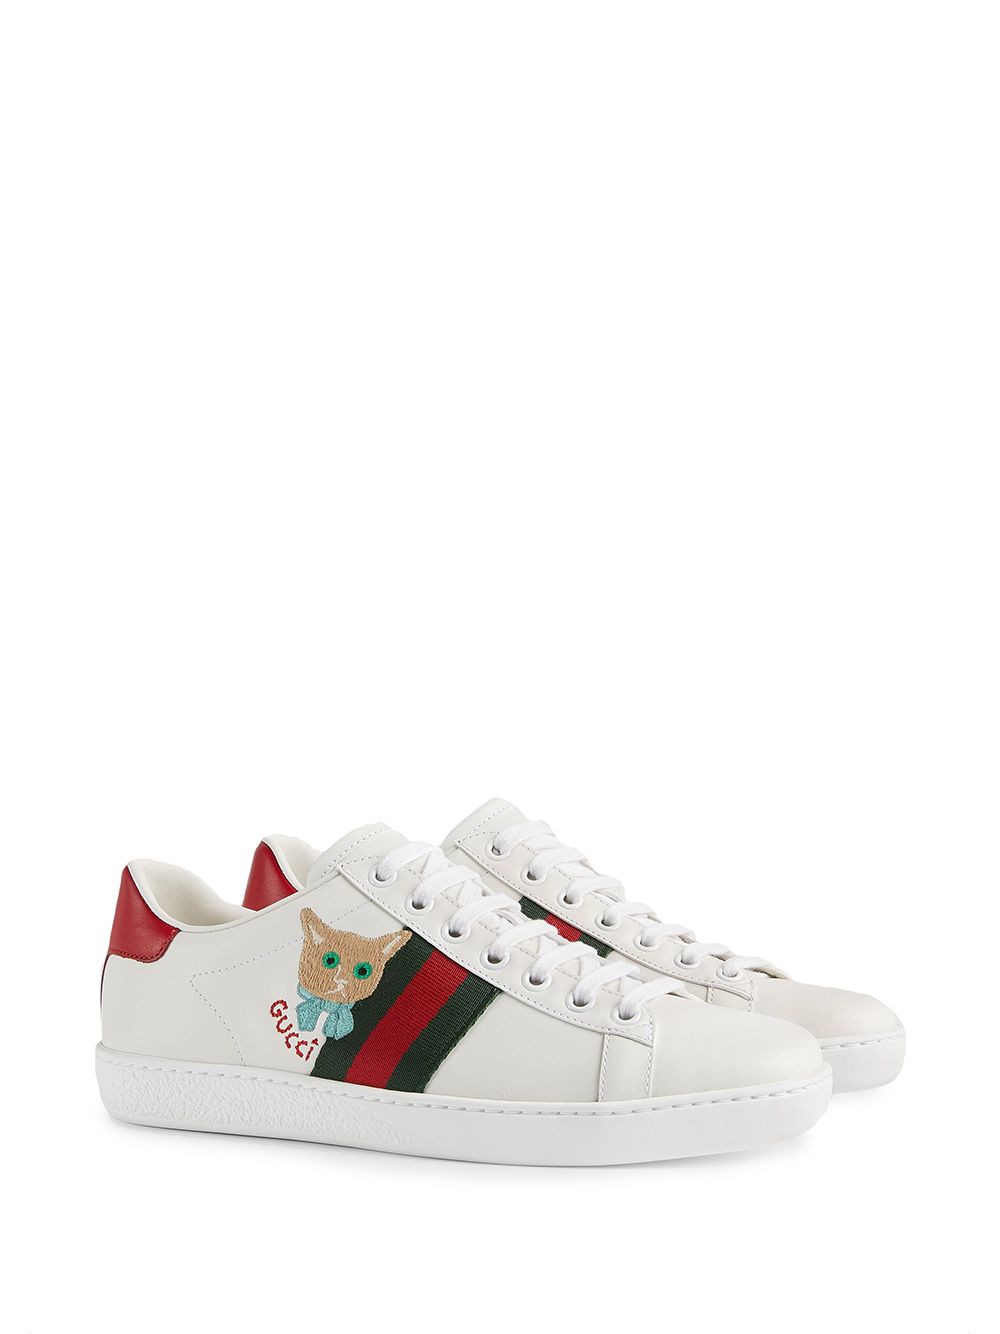 Gucci Ace sneakers met borduurwerk - Wit